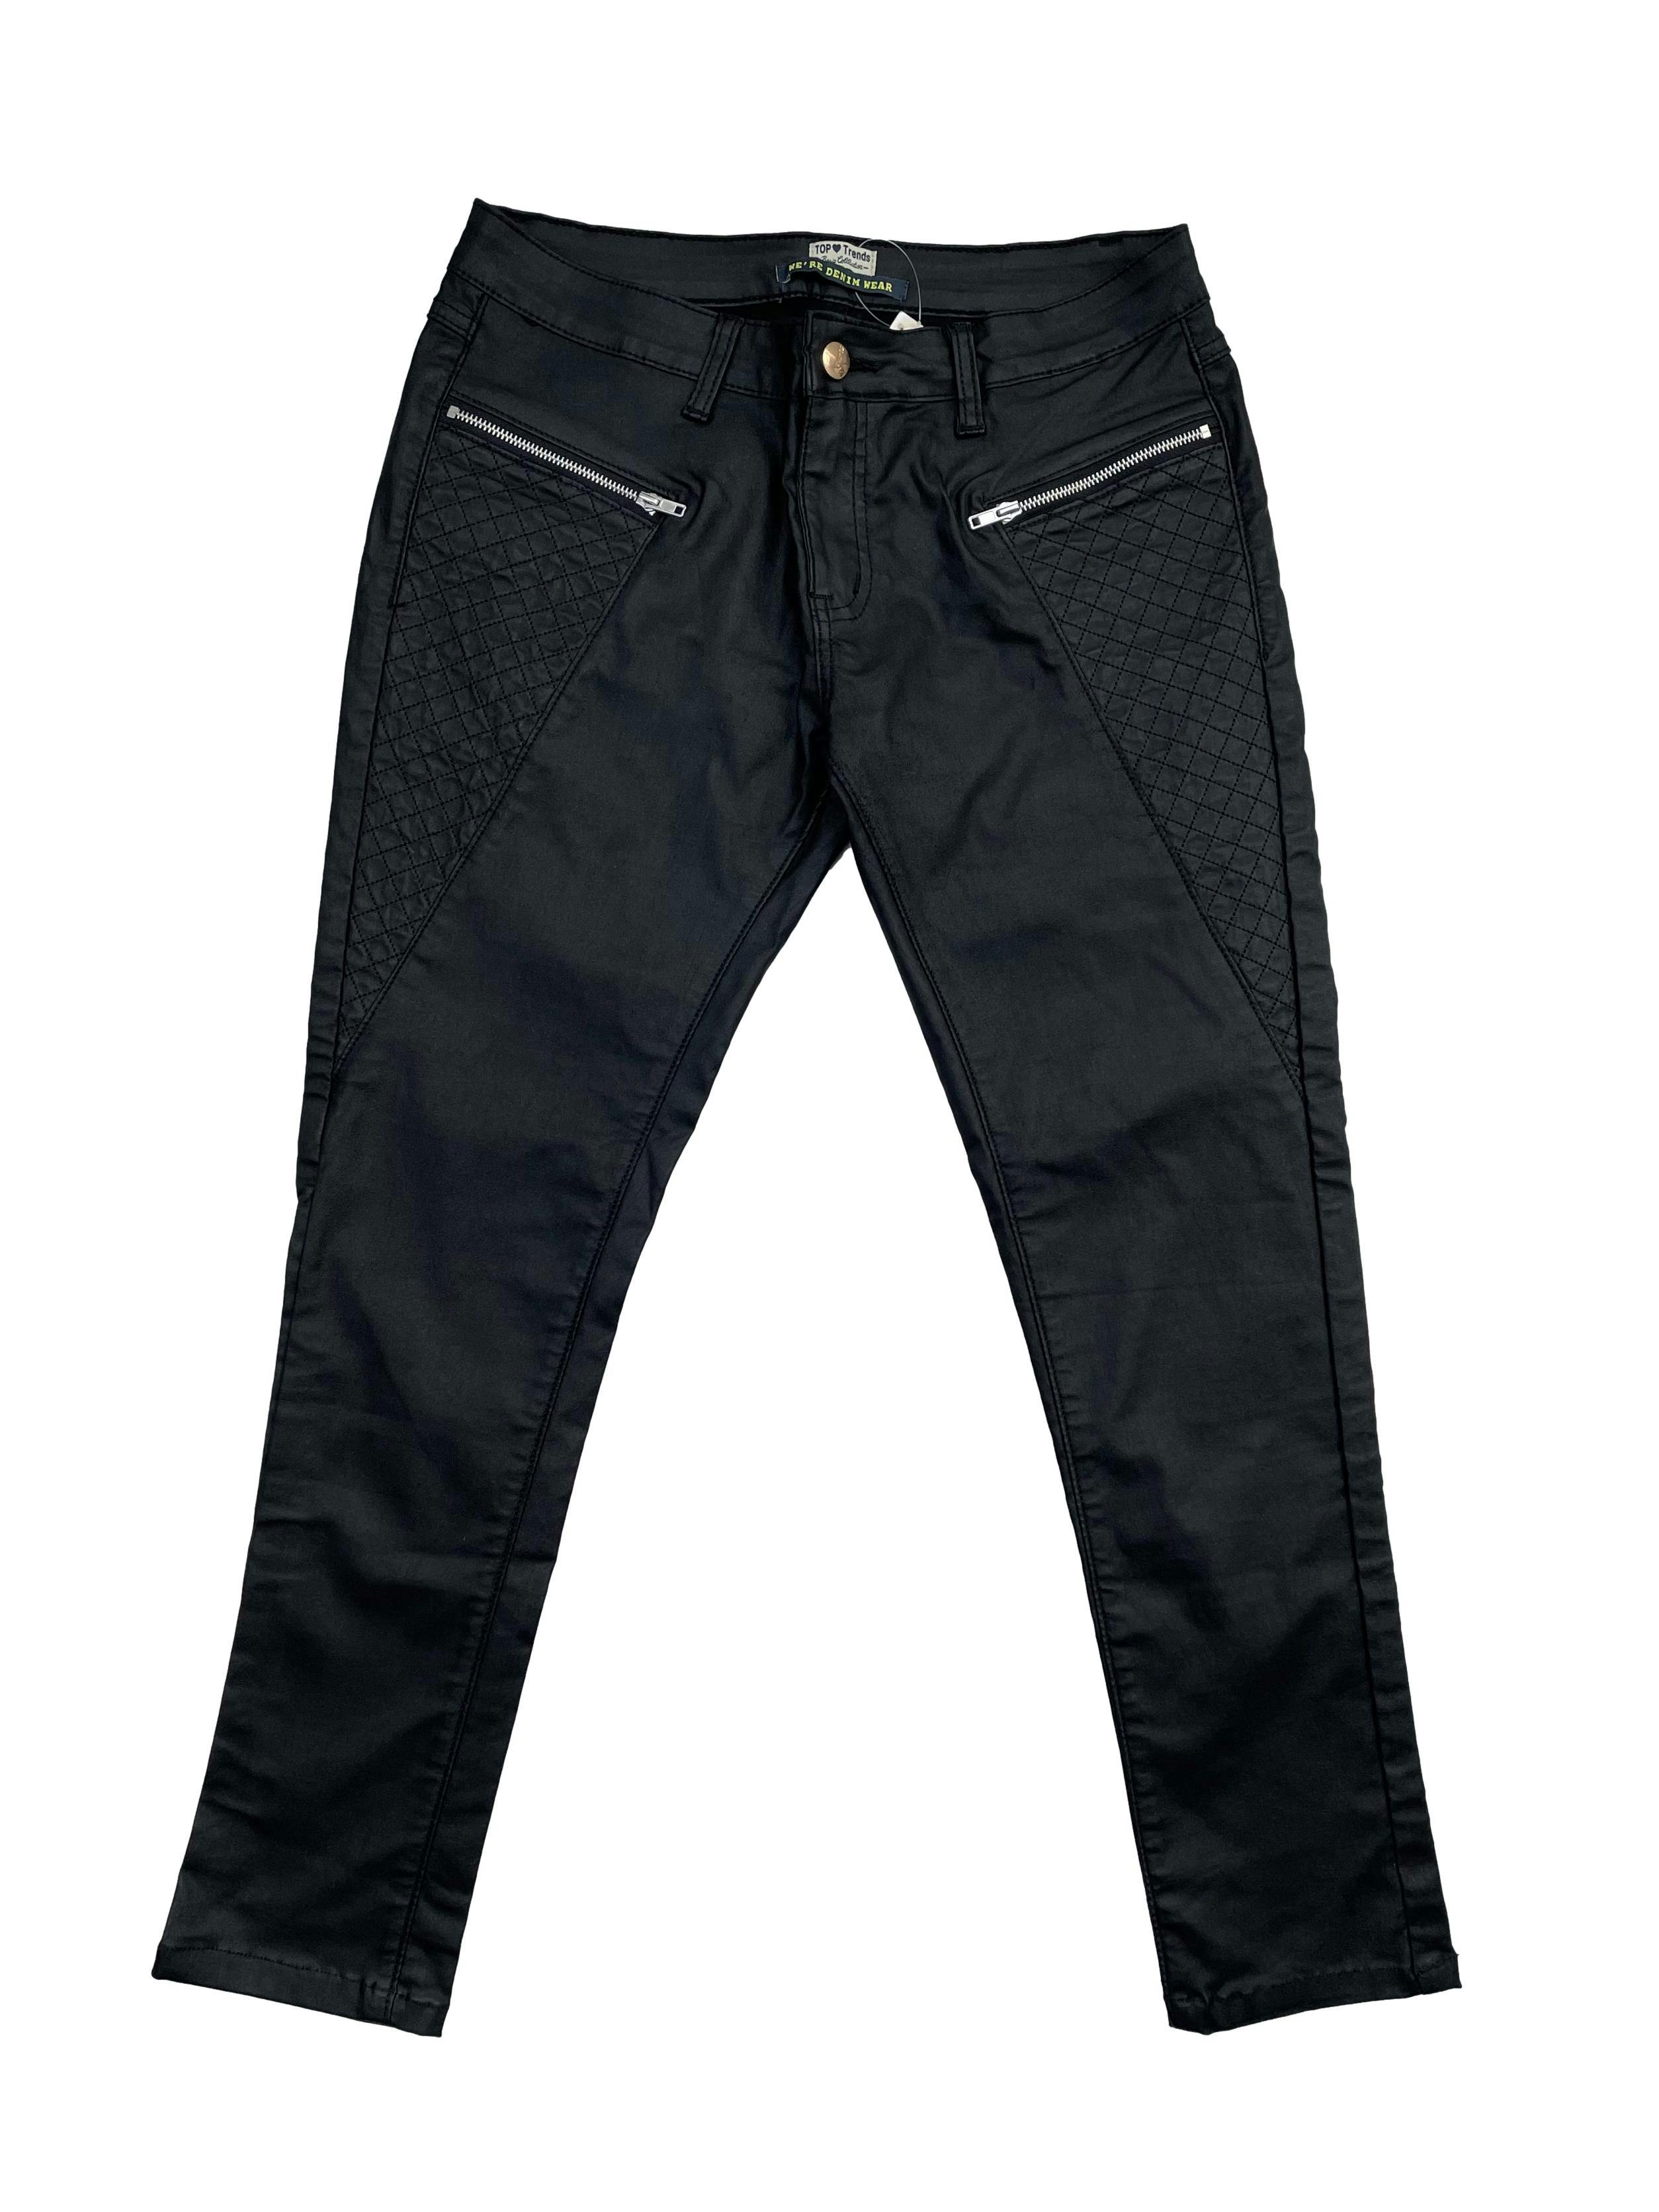 Pantalón negro pitillo, tela stretch efecto encerado, con cierres y falsos bolsillos. Tiro 22cm, Cintura 80cm, Largo 88cm.Talla S en etiqueta.